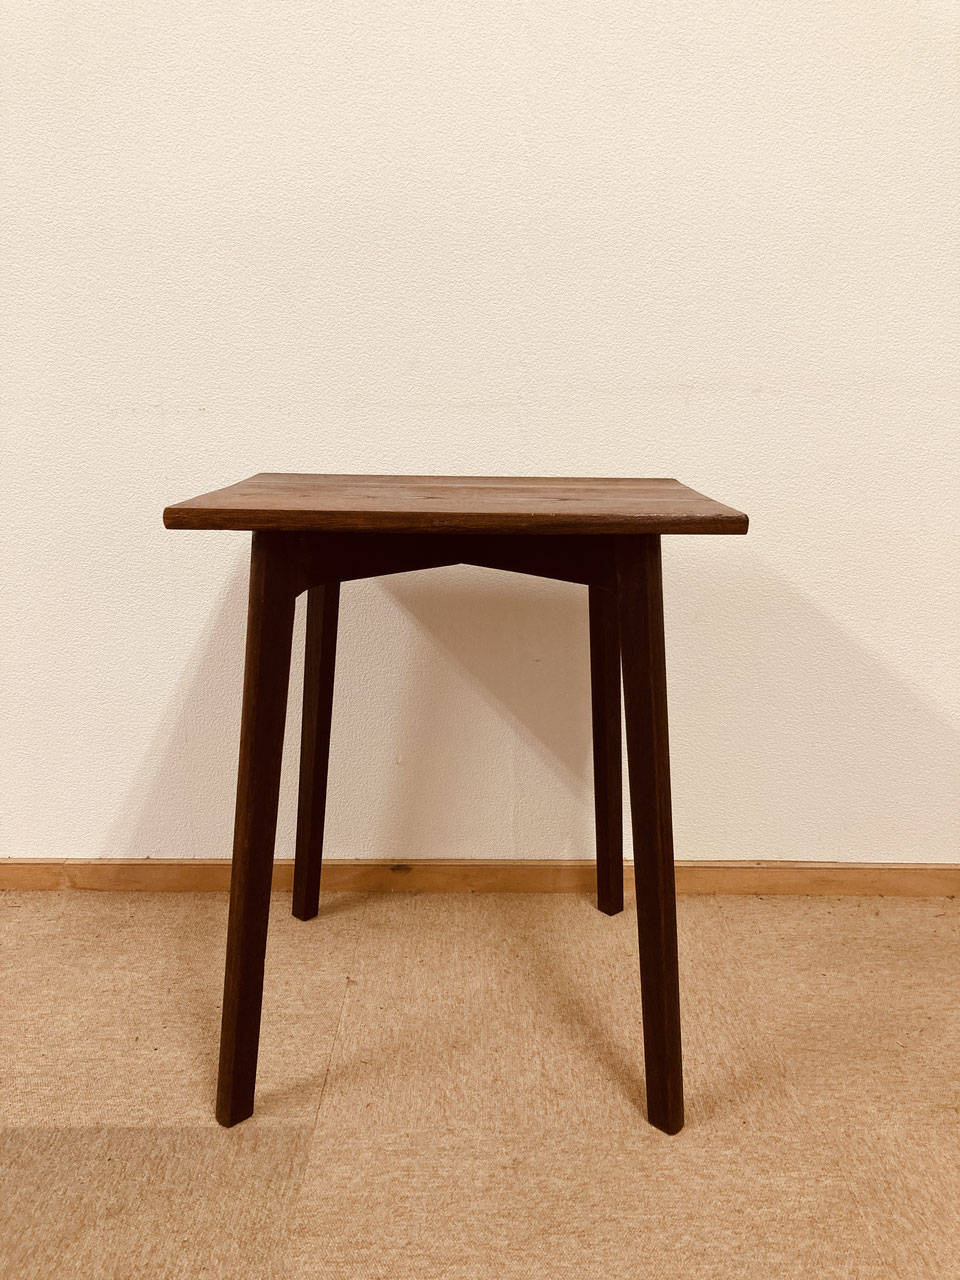 ケヤキのサイドテーブル - 奈良の昭和レトロな家具と雑貨「ひつじ屋」